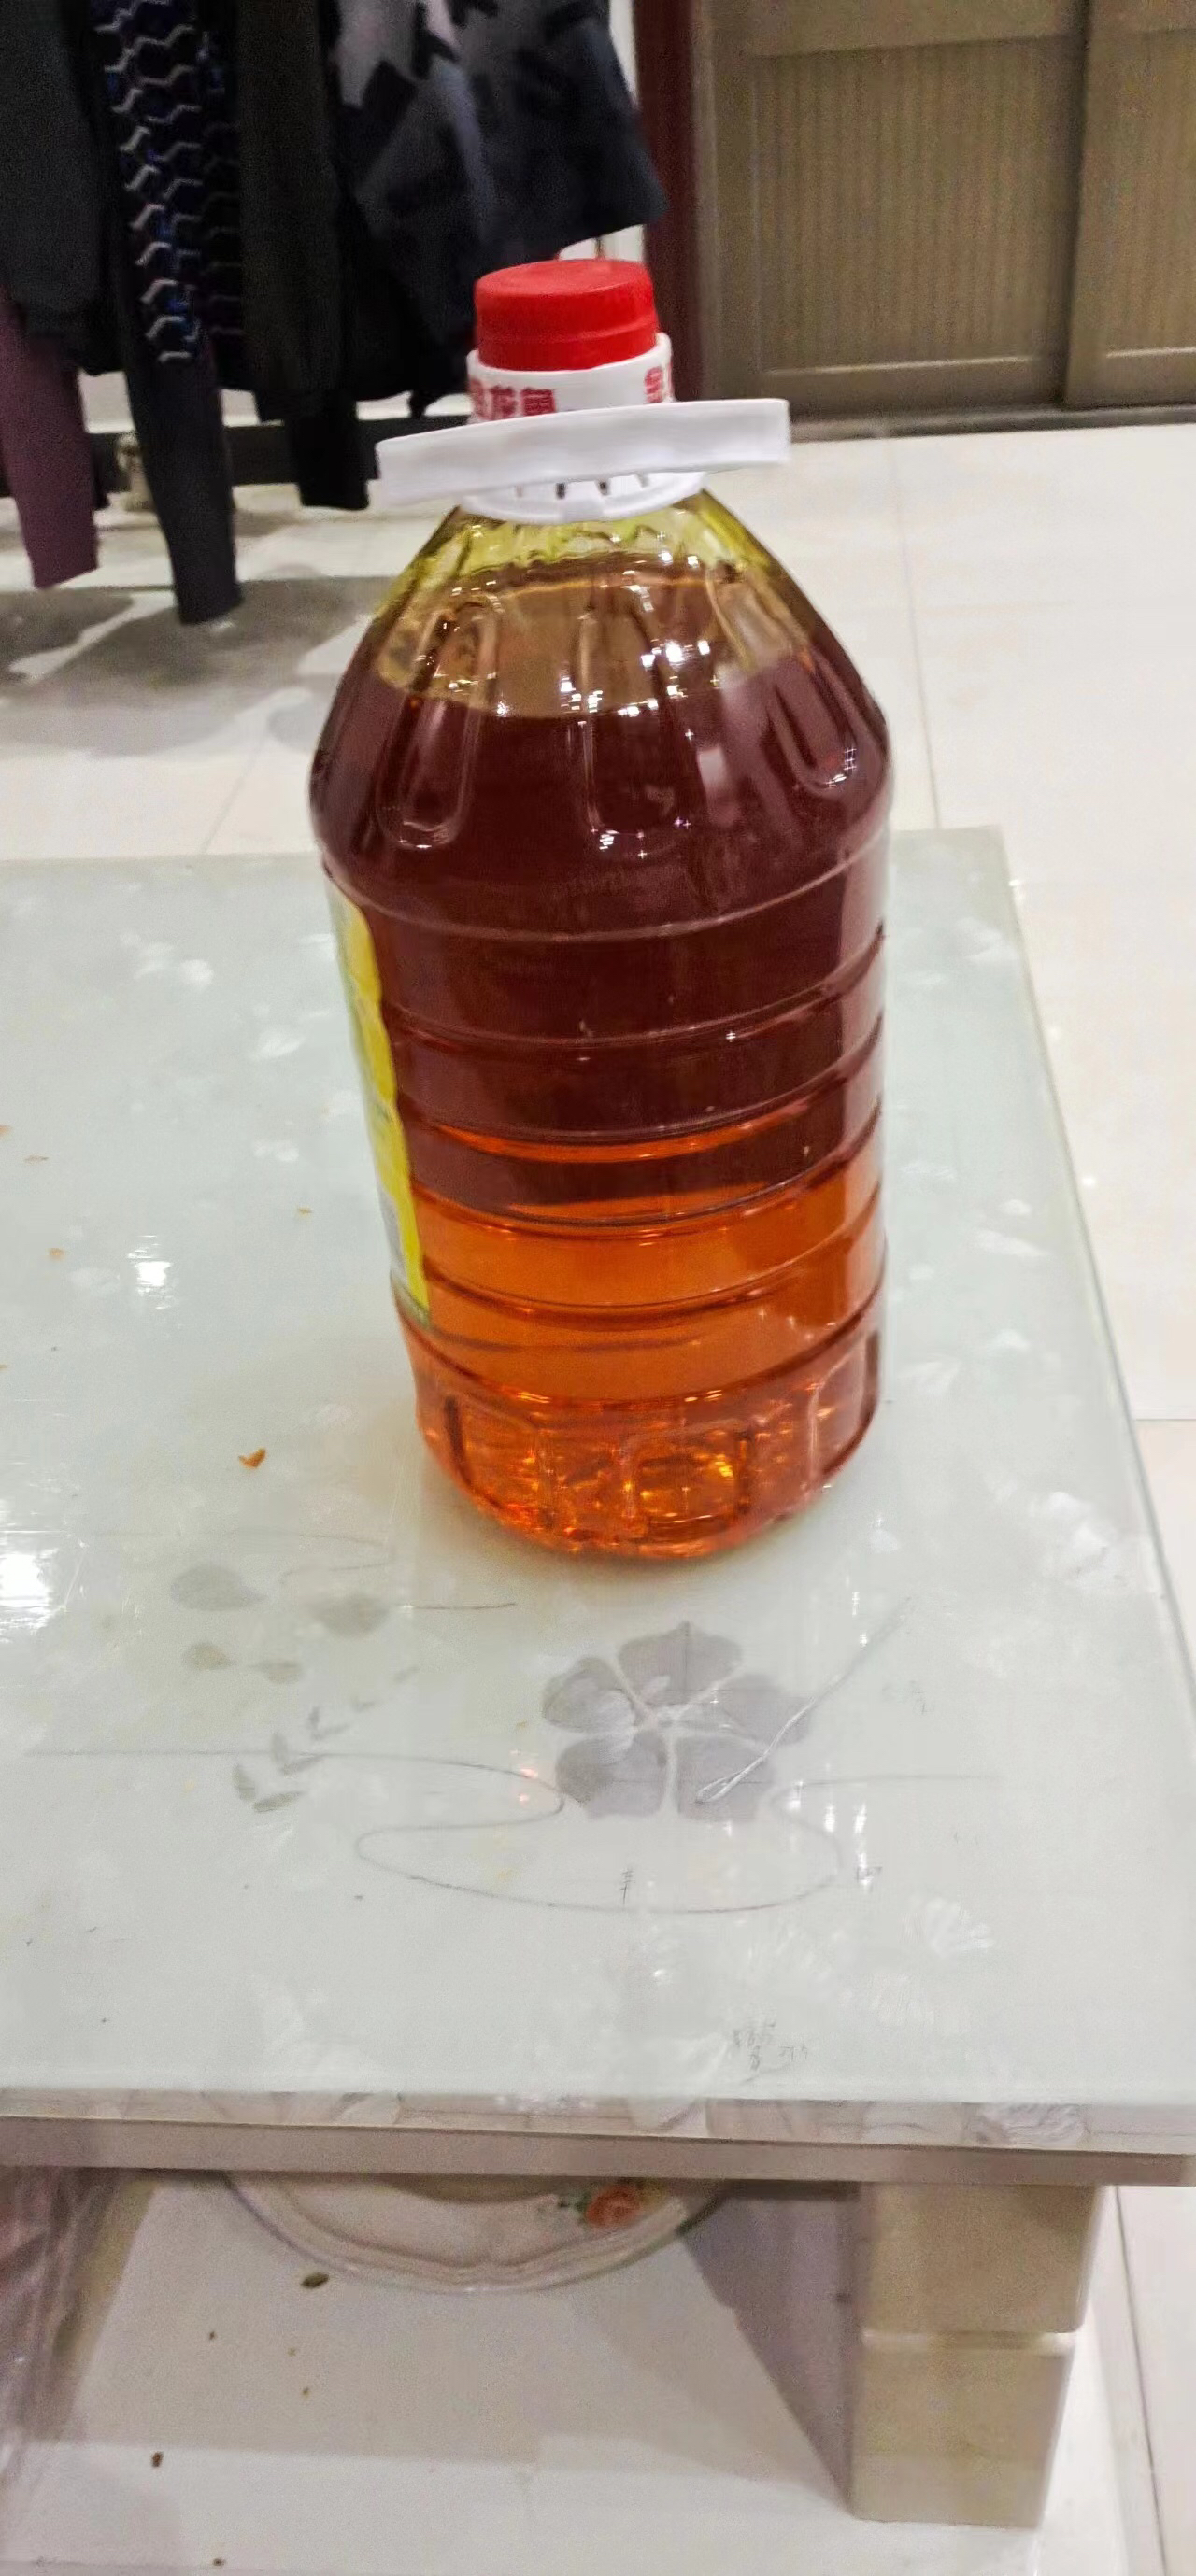 金龙鱼东北大豆油5升非转基因豆油家用食用油大桶装油5L 植物油晒单图